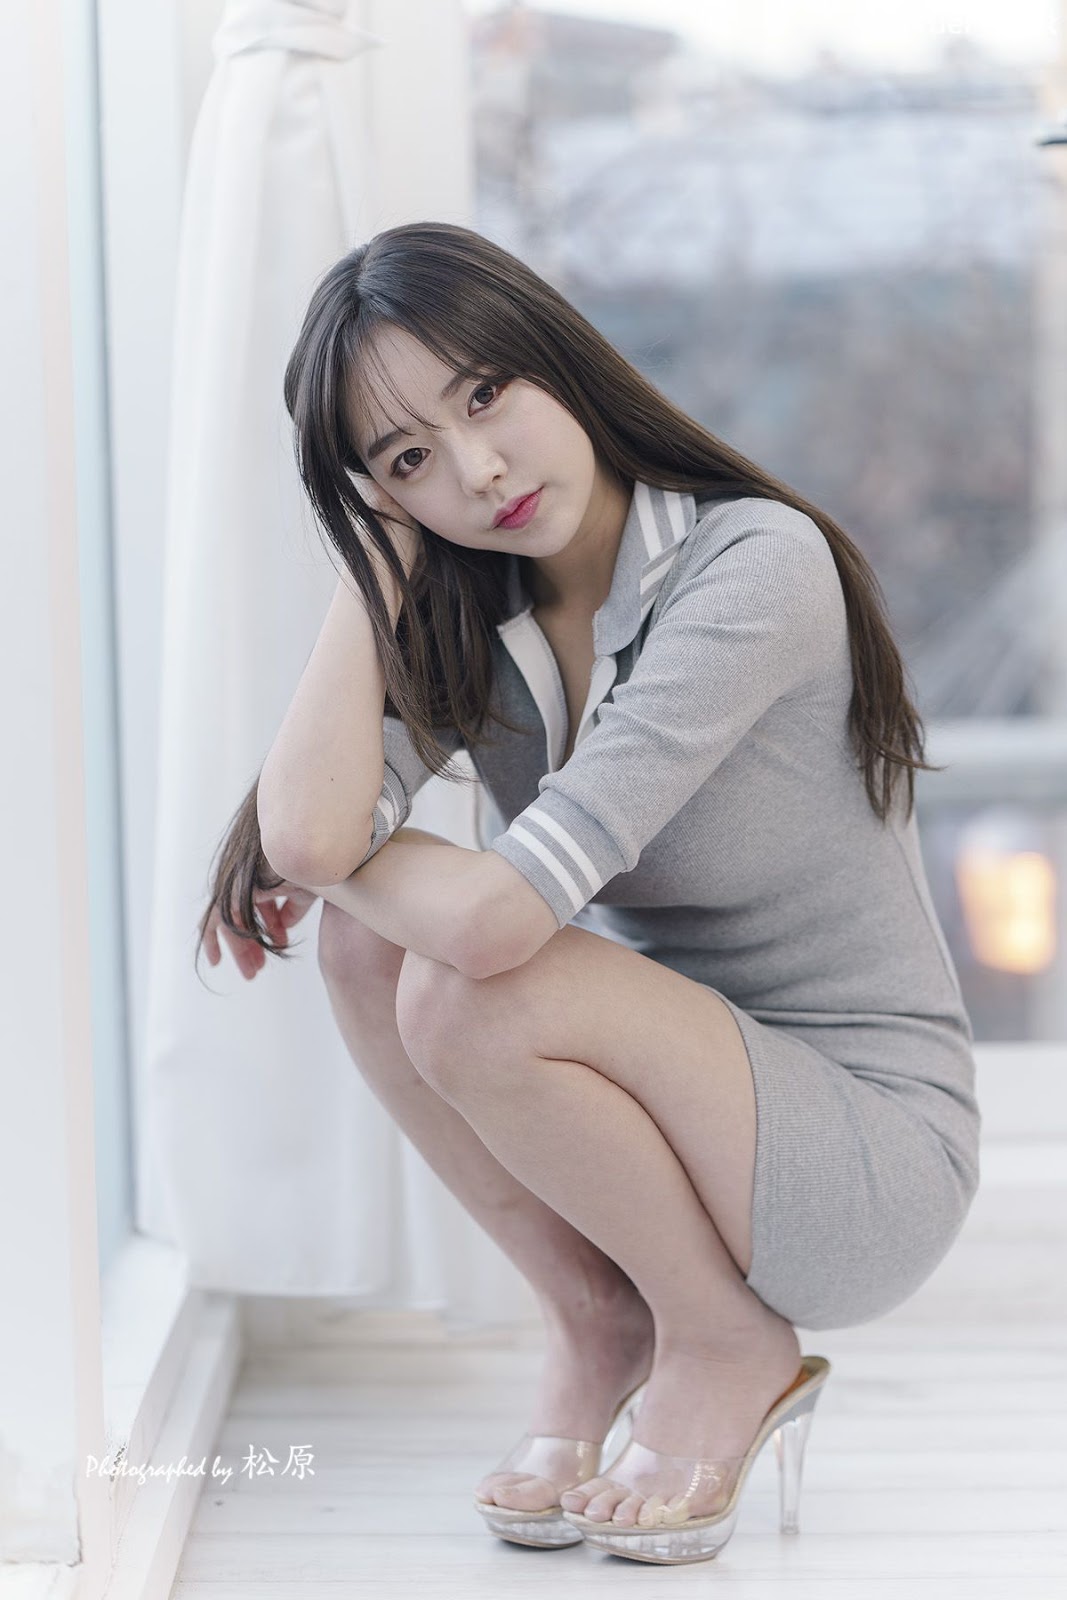 Image-Korean-Hot-Model-Go-Eun-Yang-Indoor-Photoshoot-Collection-TruePic.net- Picture-75